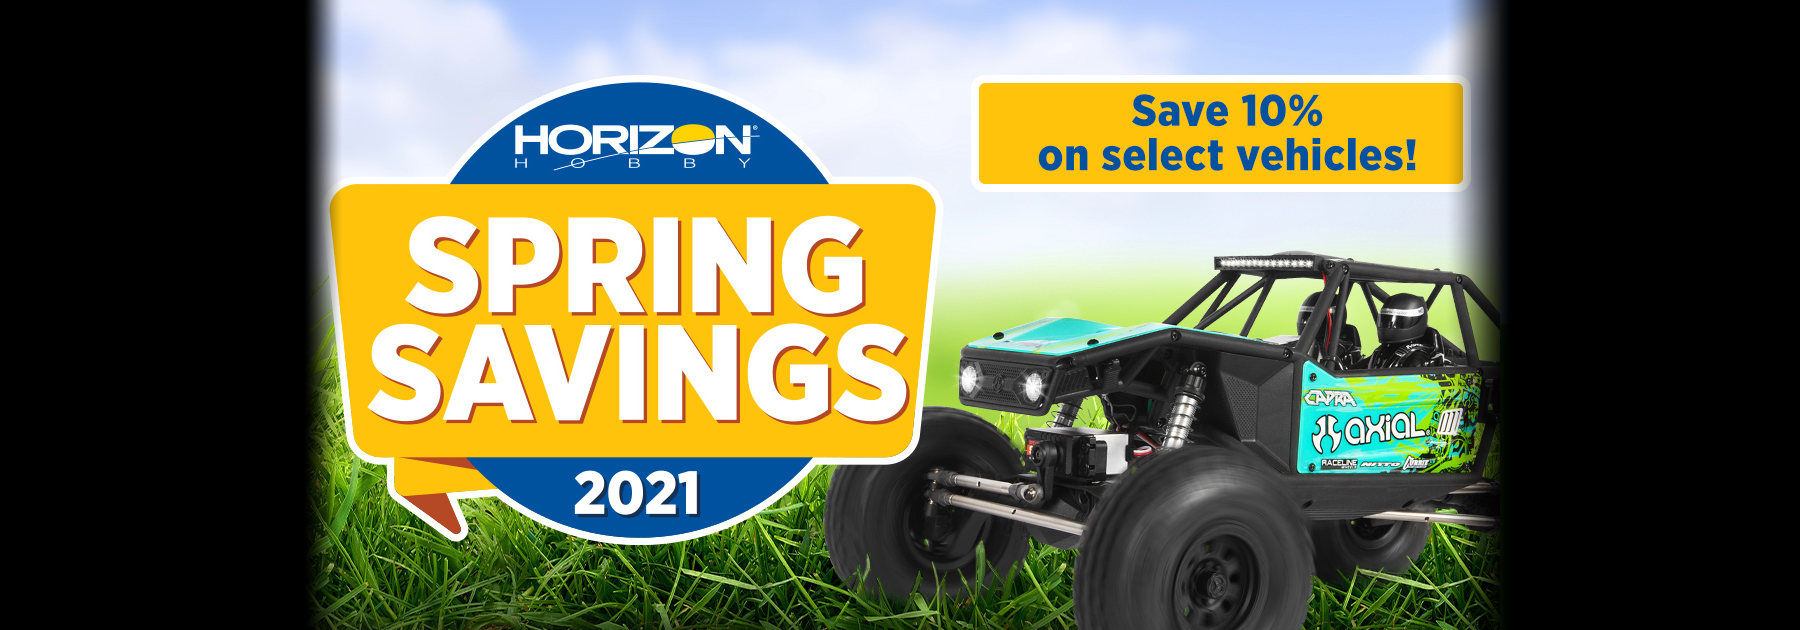 Horizon's Spring Savings Starts April 15 2021